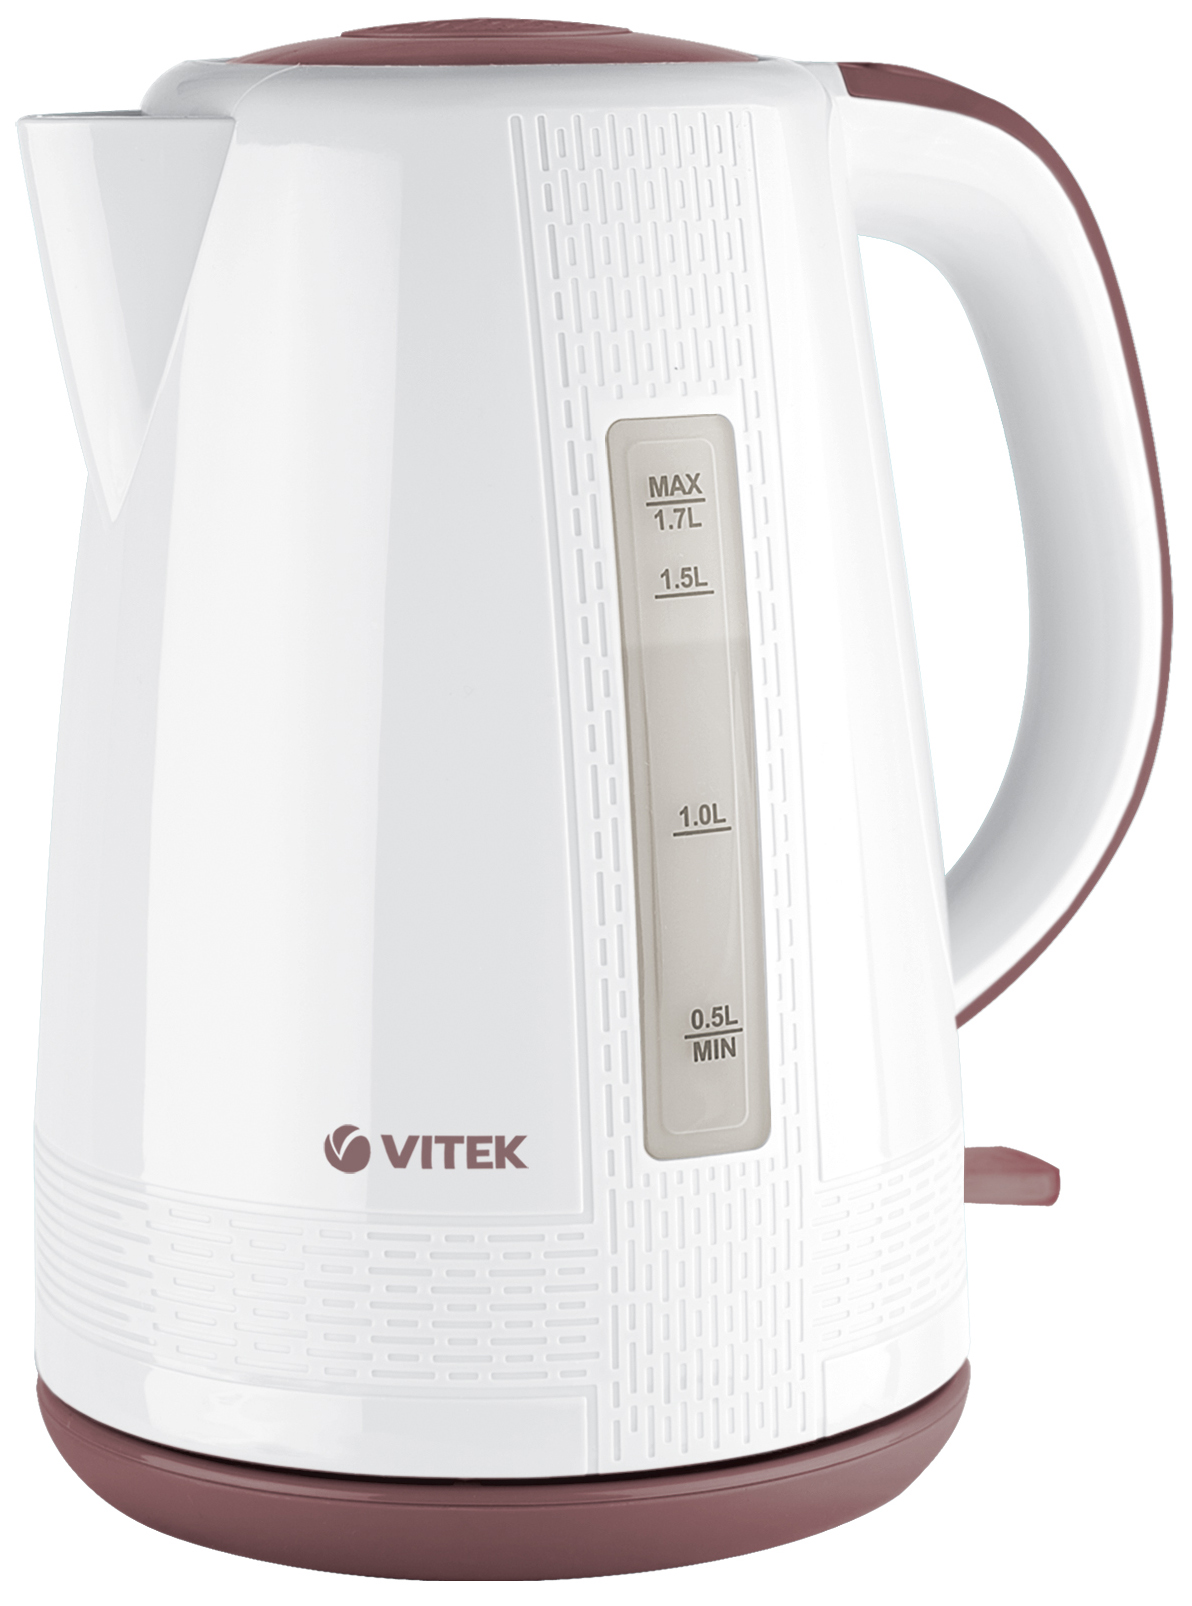 Чайник электрический VITEK VT-7055 1.7 л белый, коричневый фен vitek vt 2298 2 400 вт коричневый